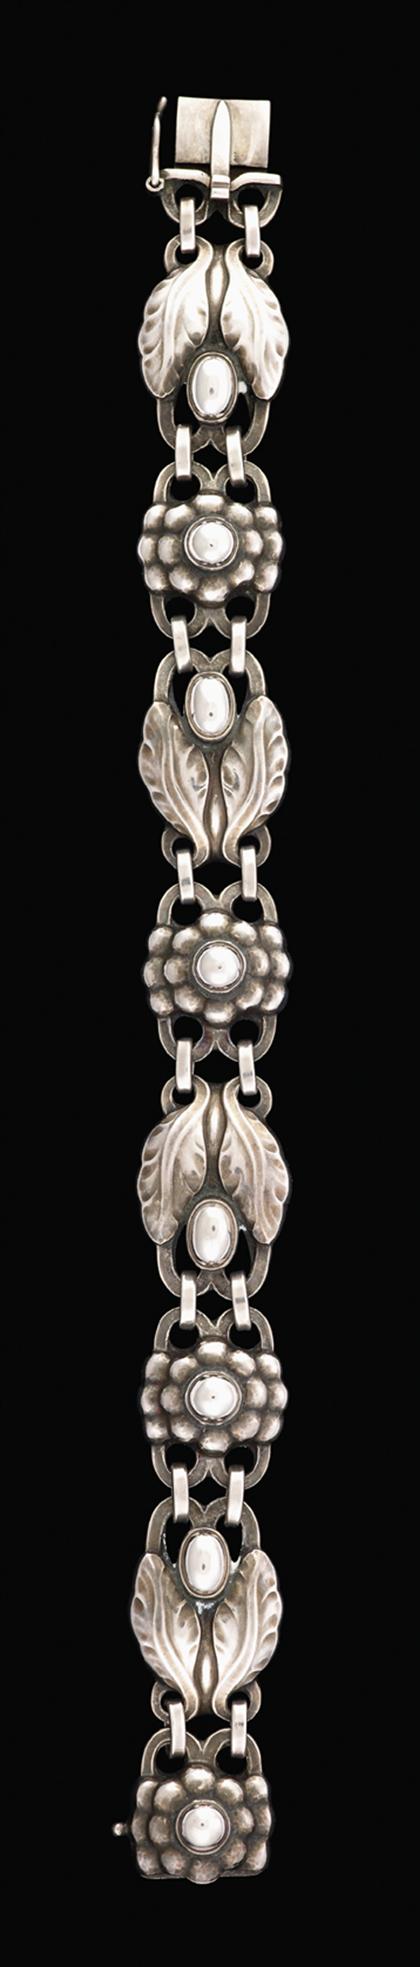 Sterling silver bracelet, Georg Jensen